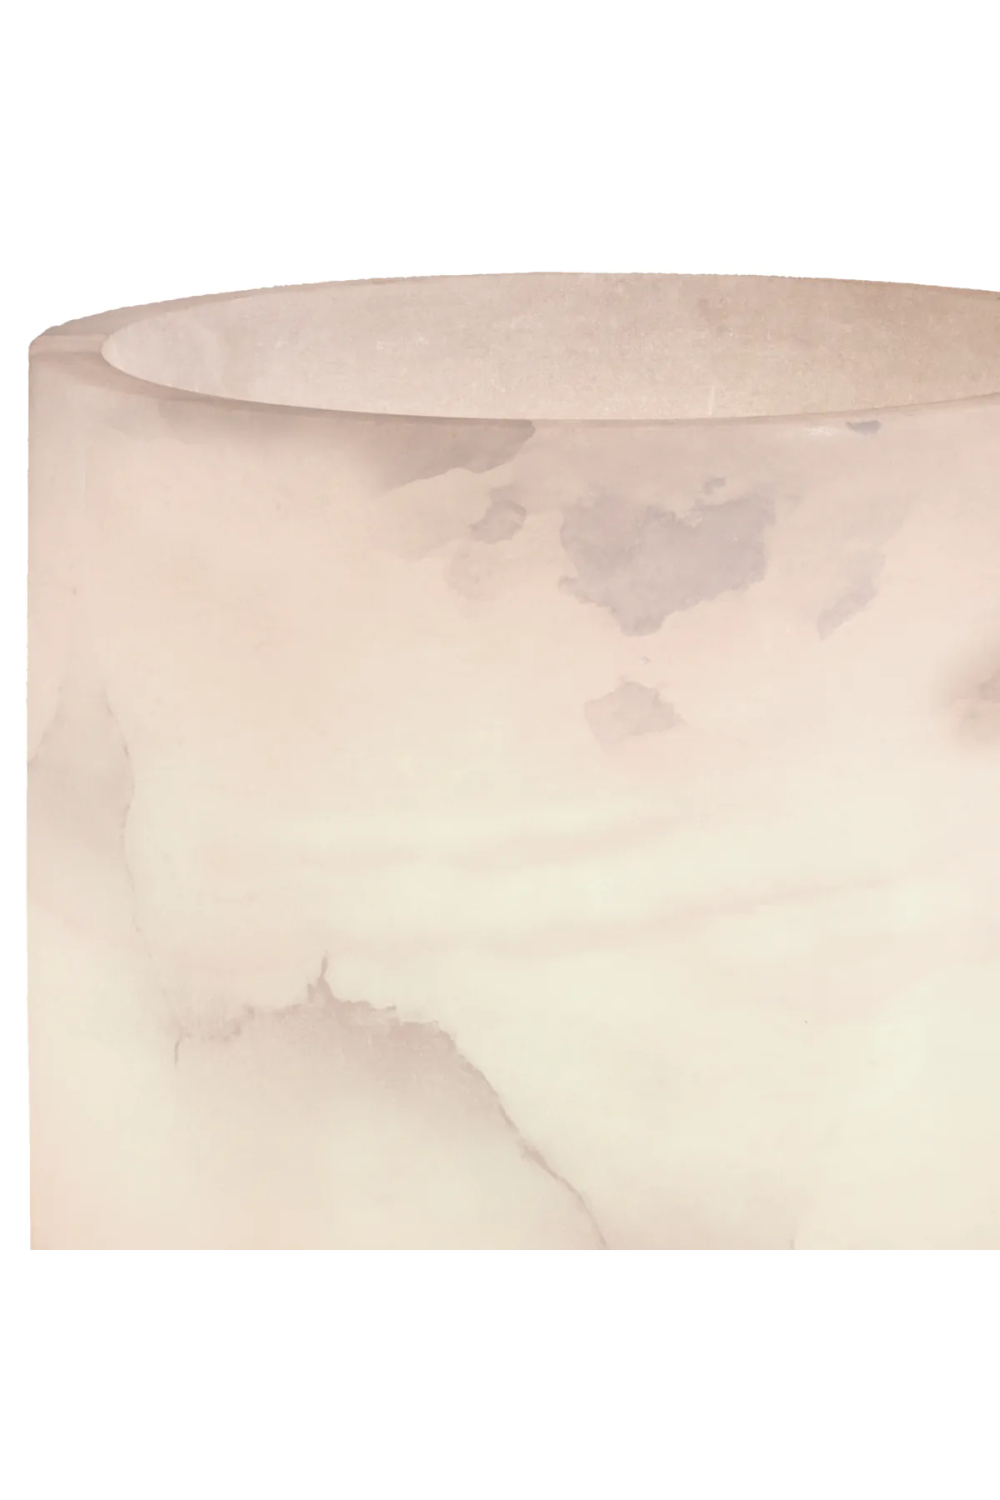 Framed Alabaster Table Lamp | Eichholtz Fraser | Oroa.com